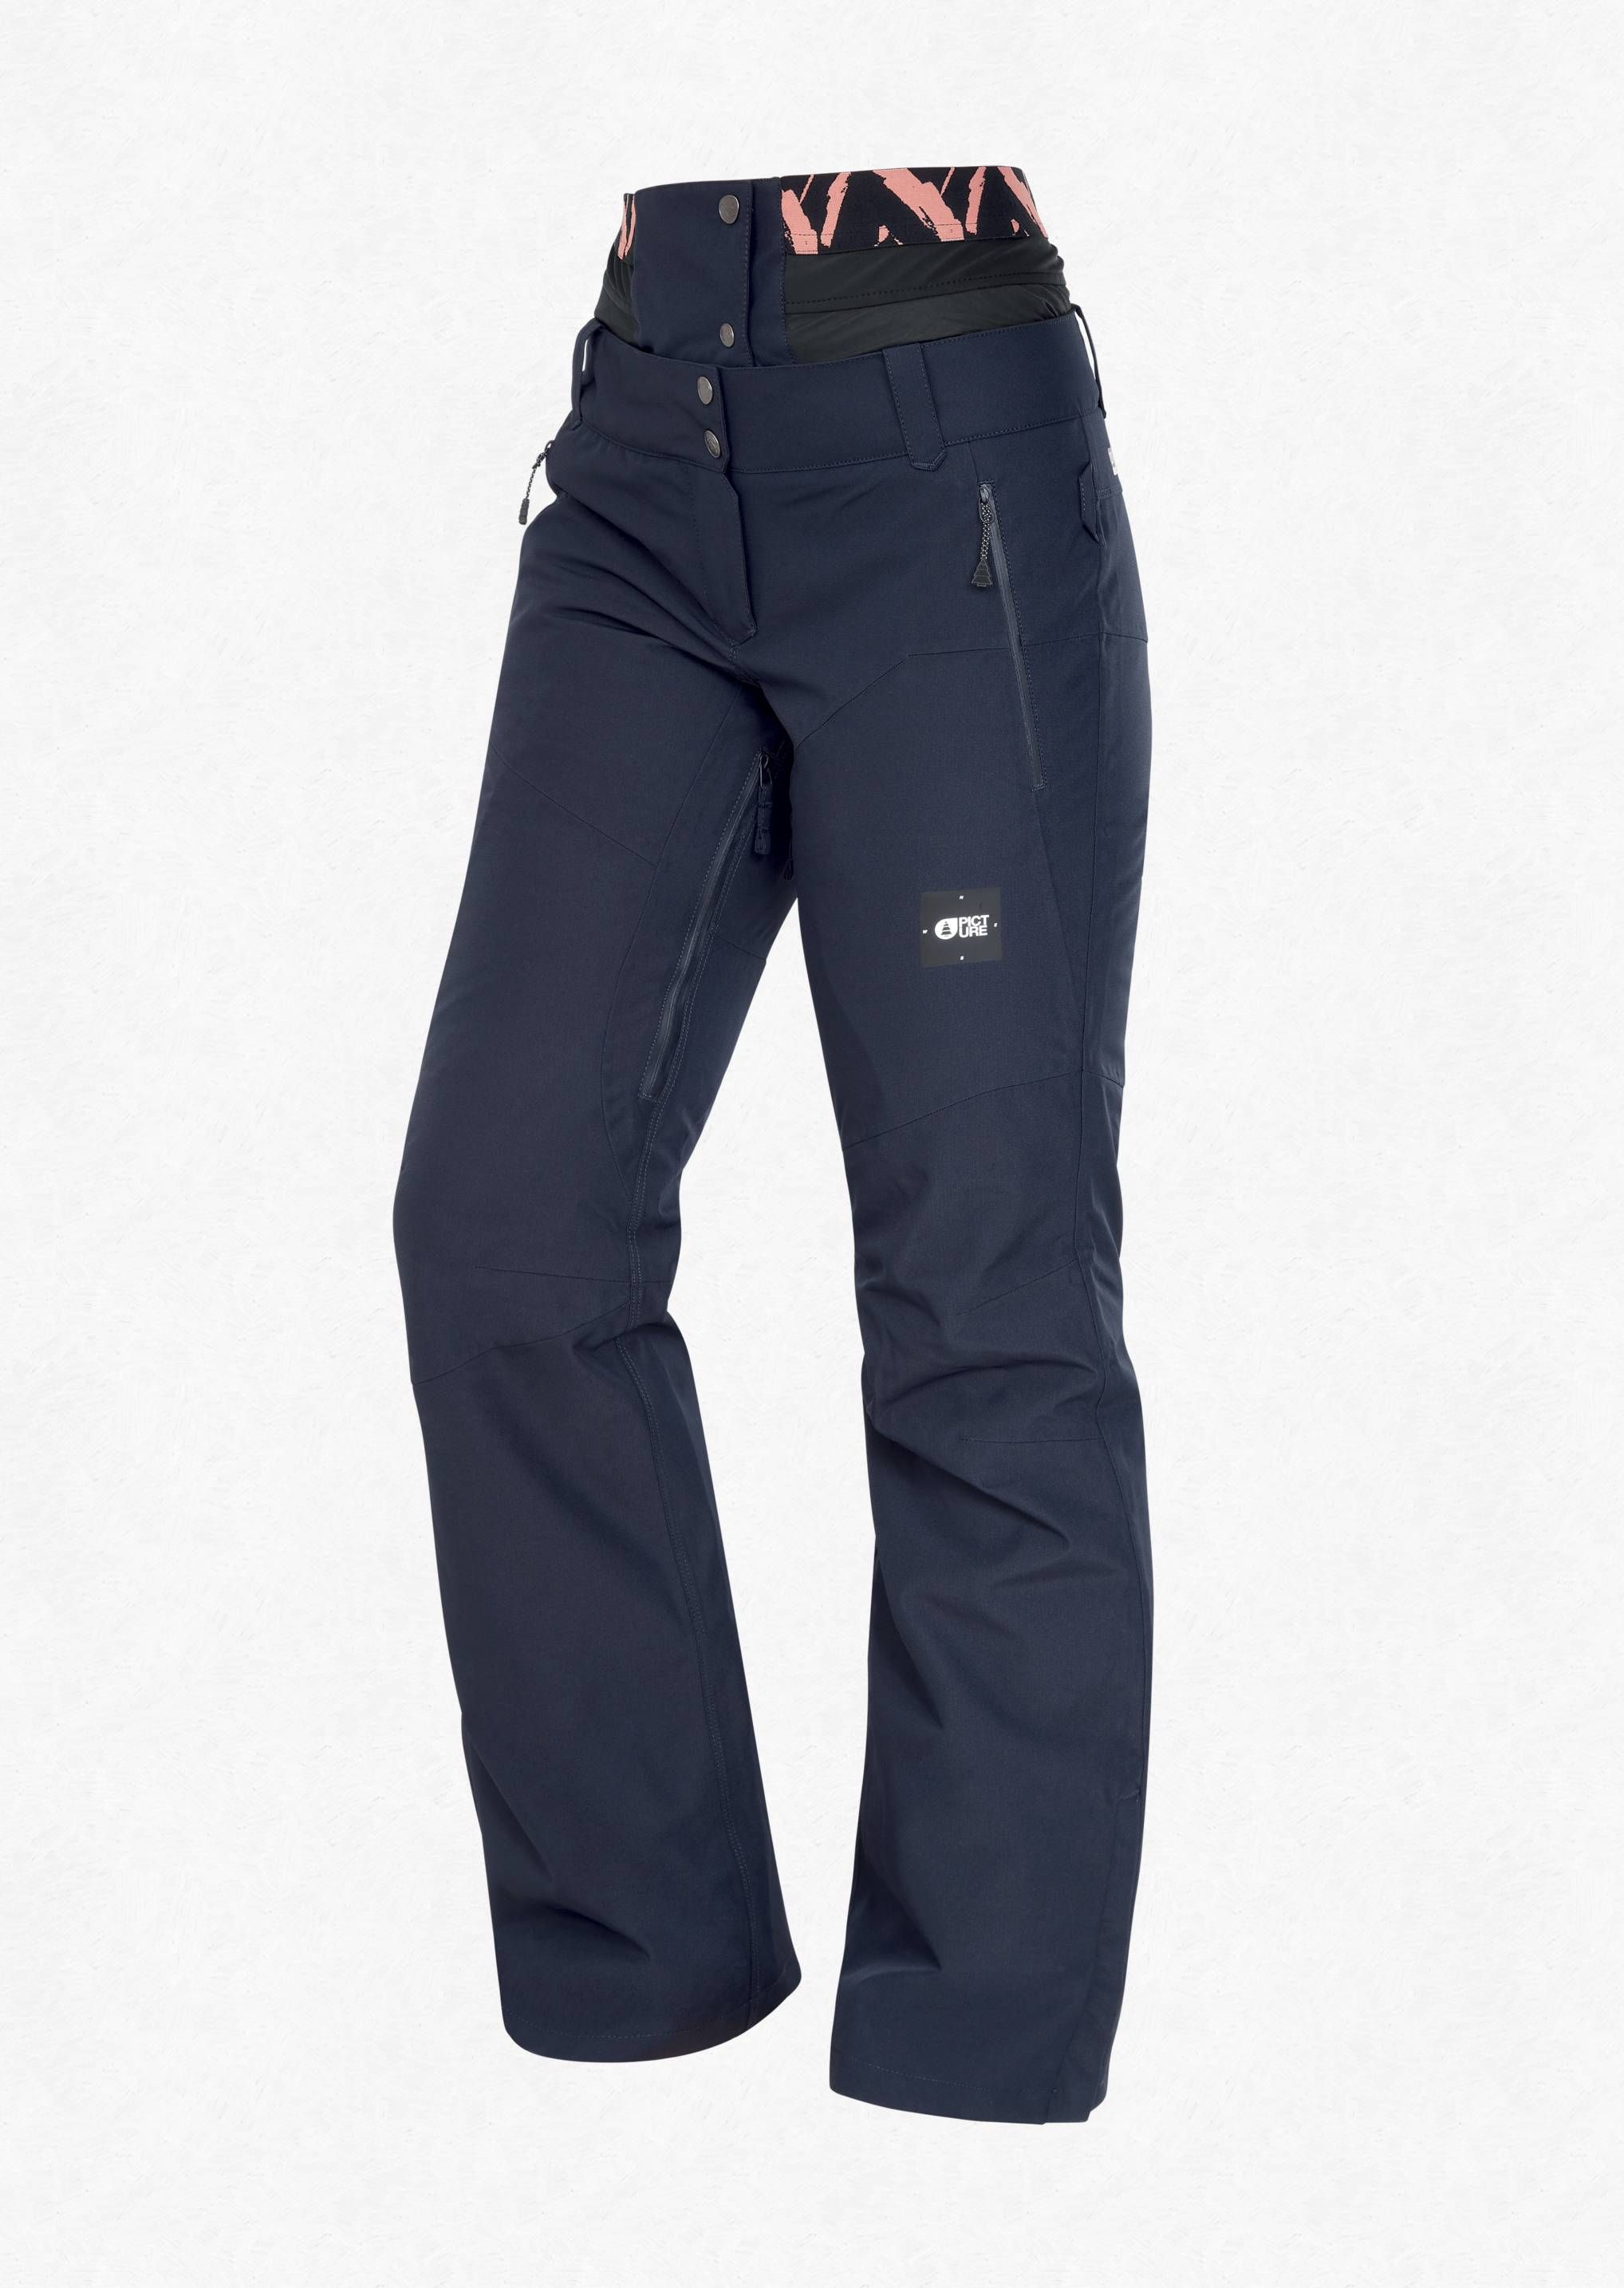 Pantalon de ski/snow Exa femmes - bleu foncé